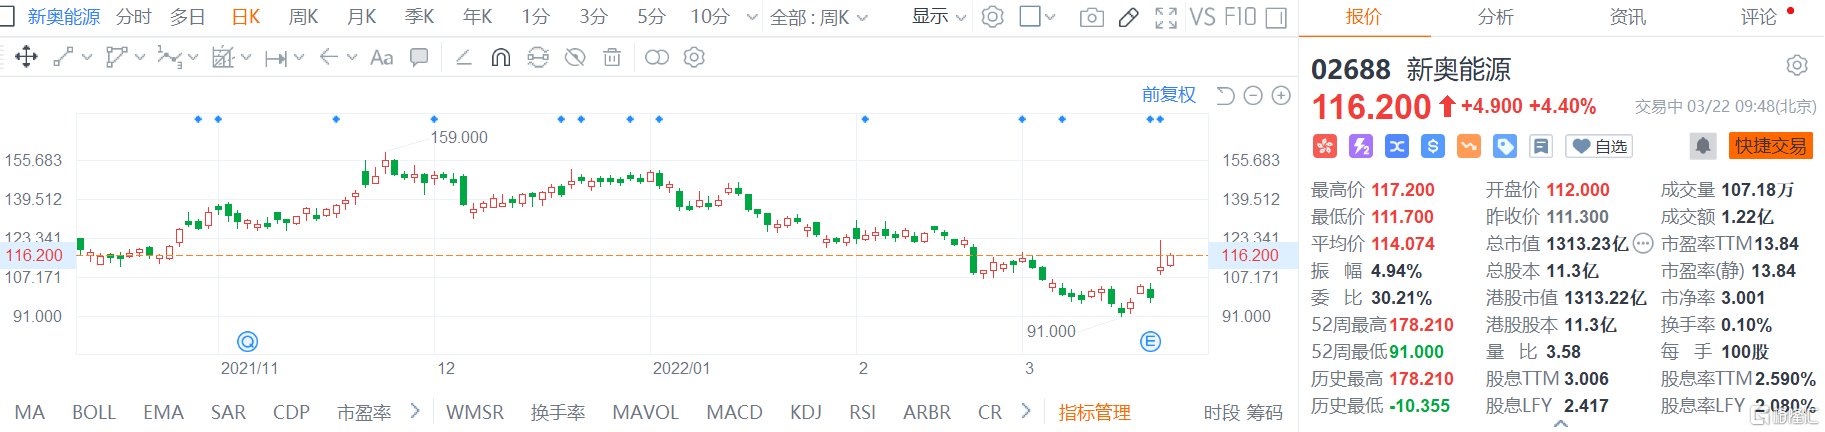 新奥能源(2688.HK)今日再度走强 现报116.2港元涨幅4.4%